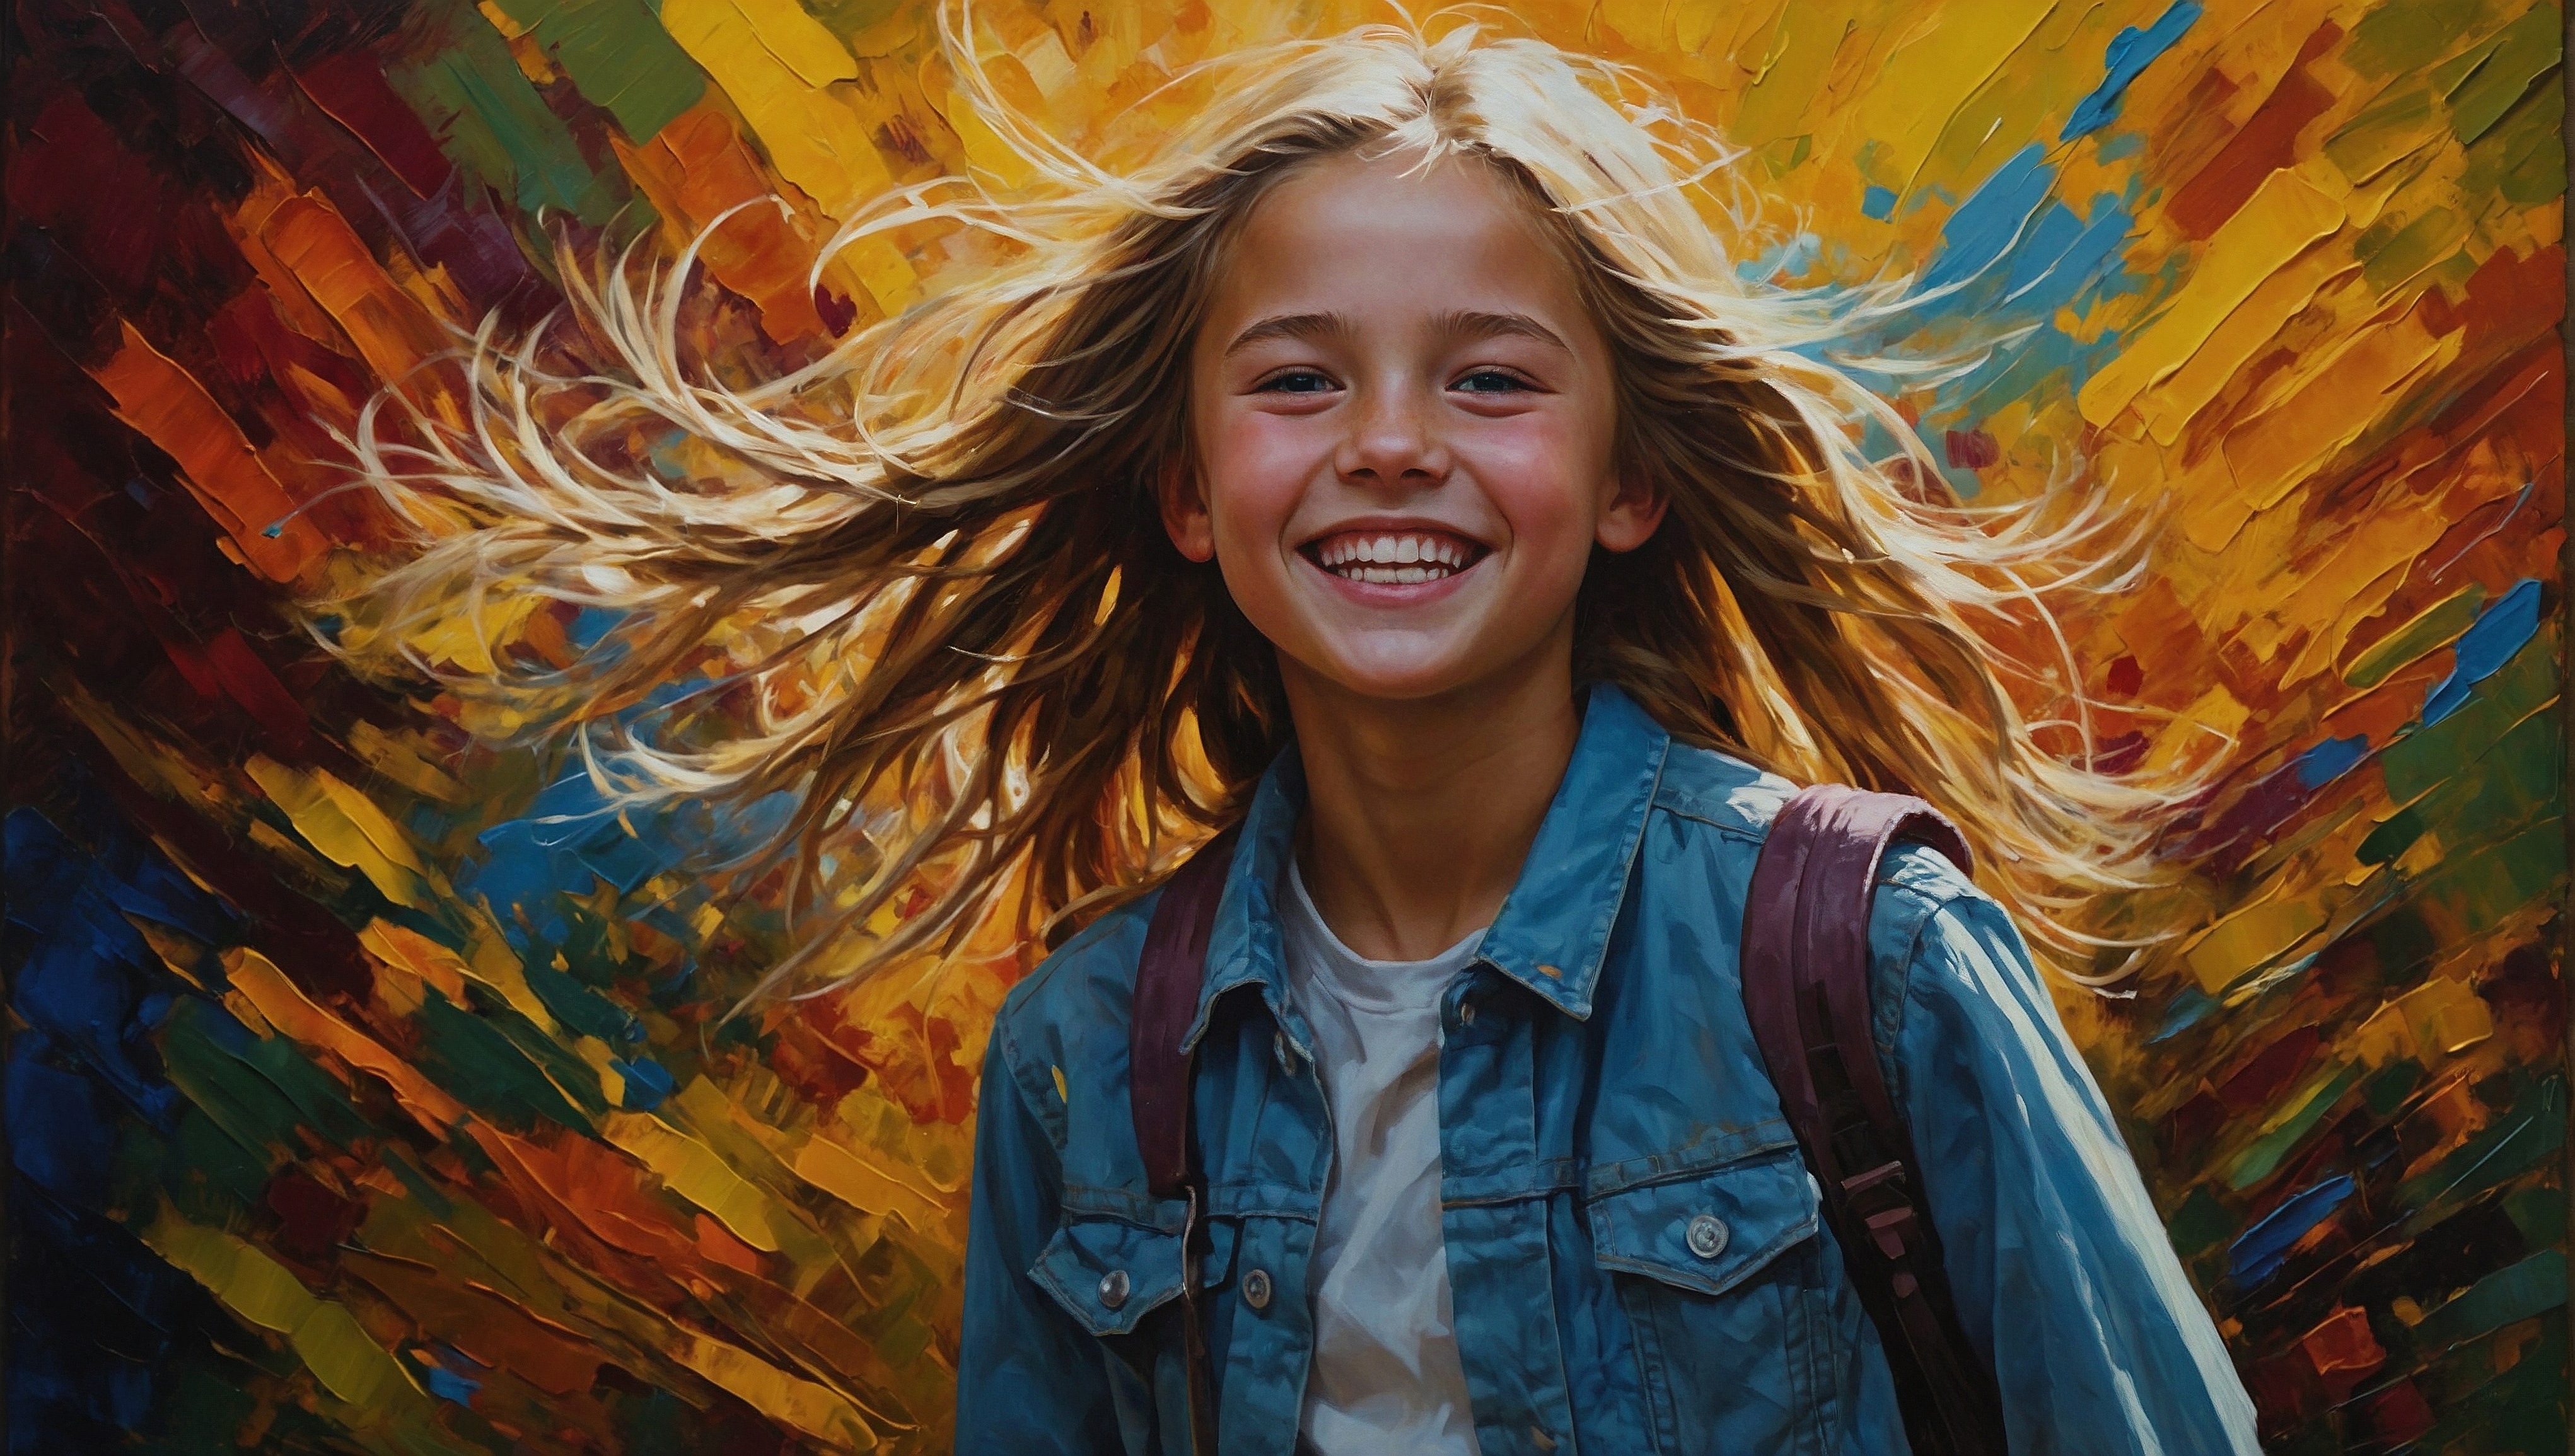 Бесплатное фото Девушка улыбается на фоне картины с разноцветными крыльями